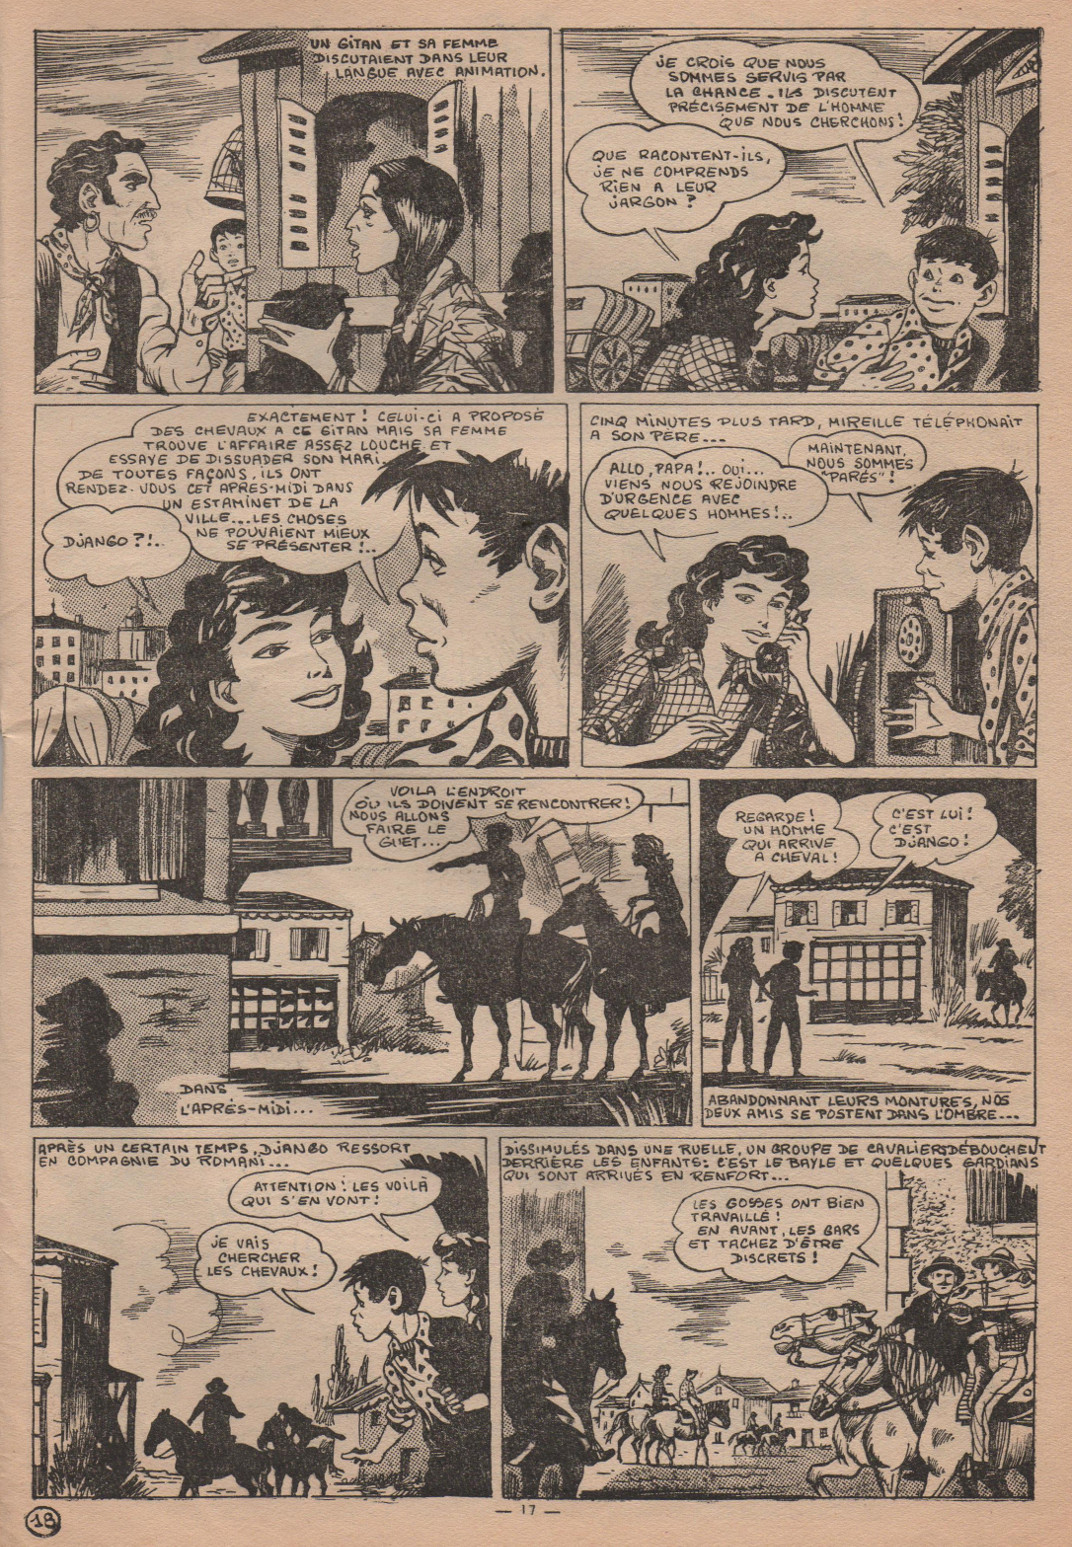 « Mireille de Camargue », dans Lisette, en 1956 (n° 35).